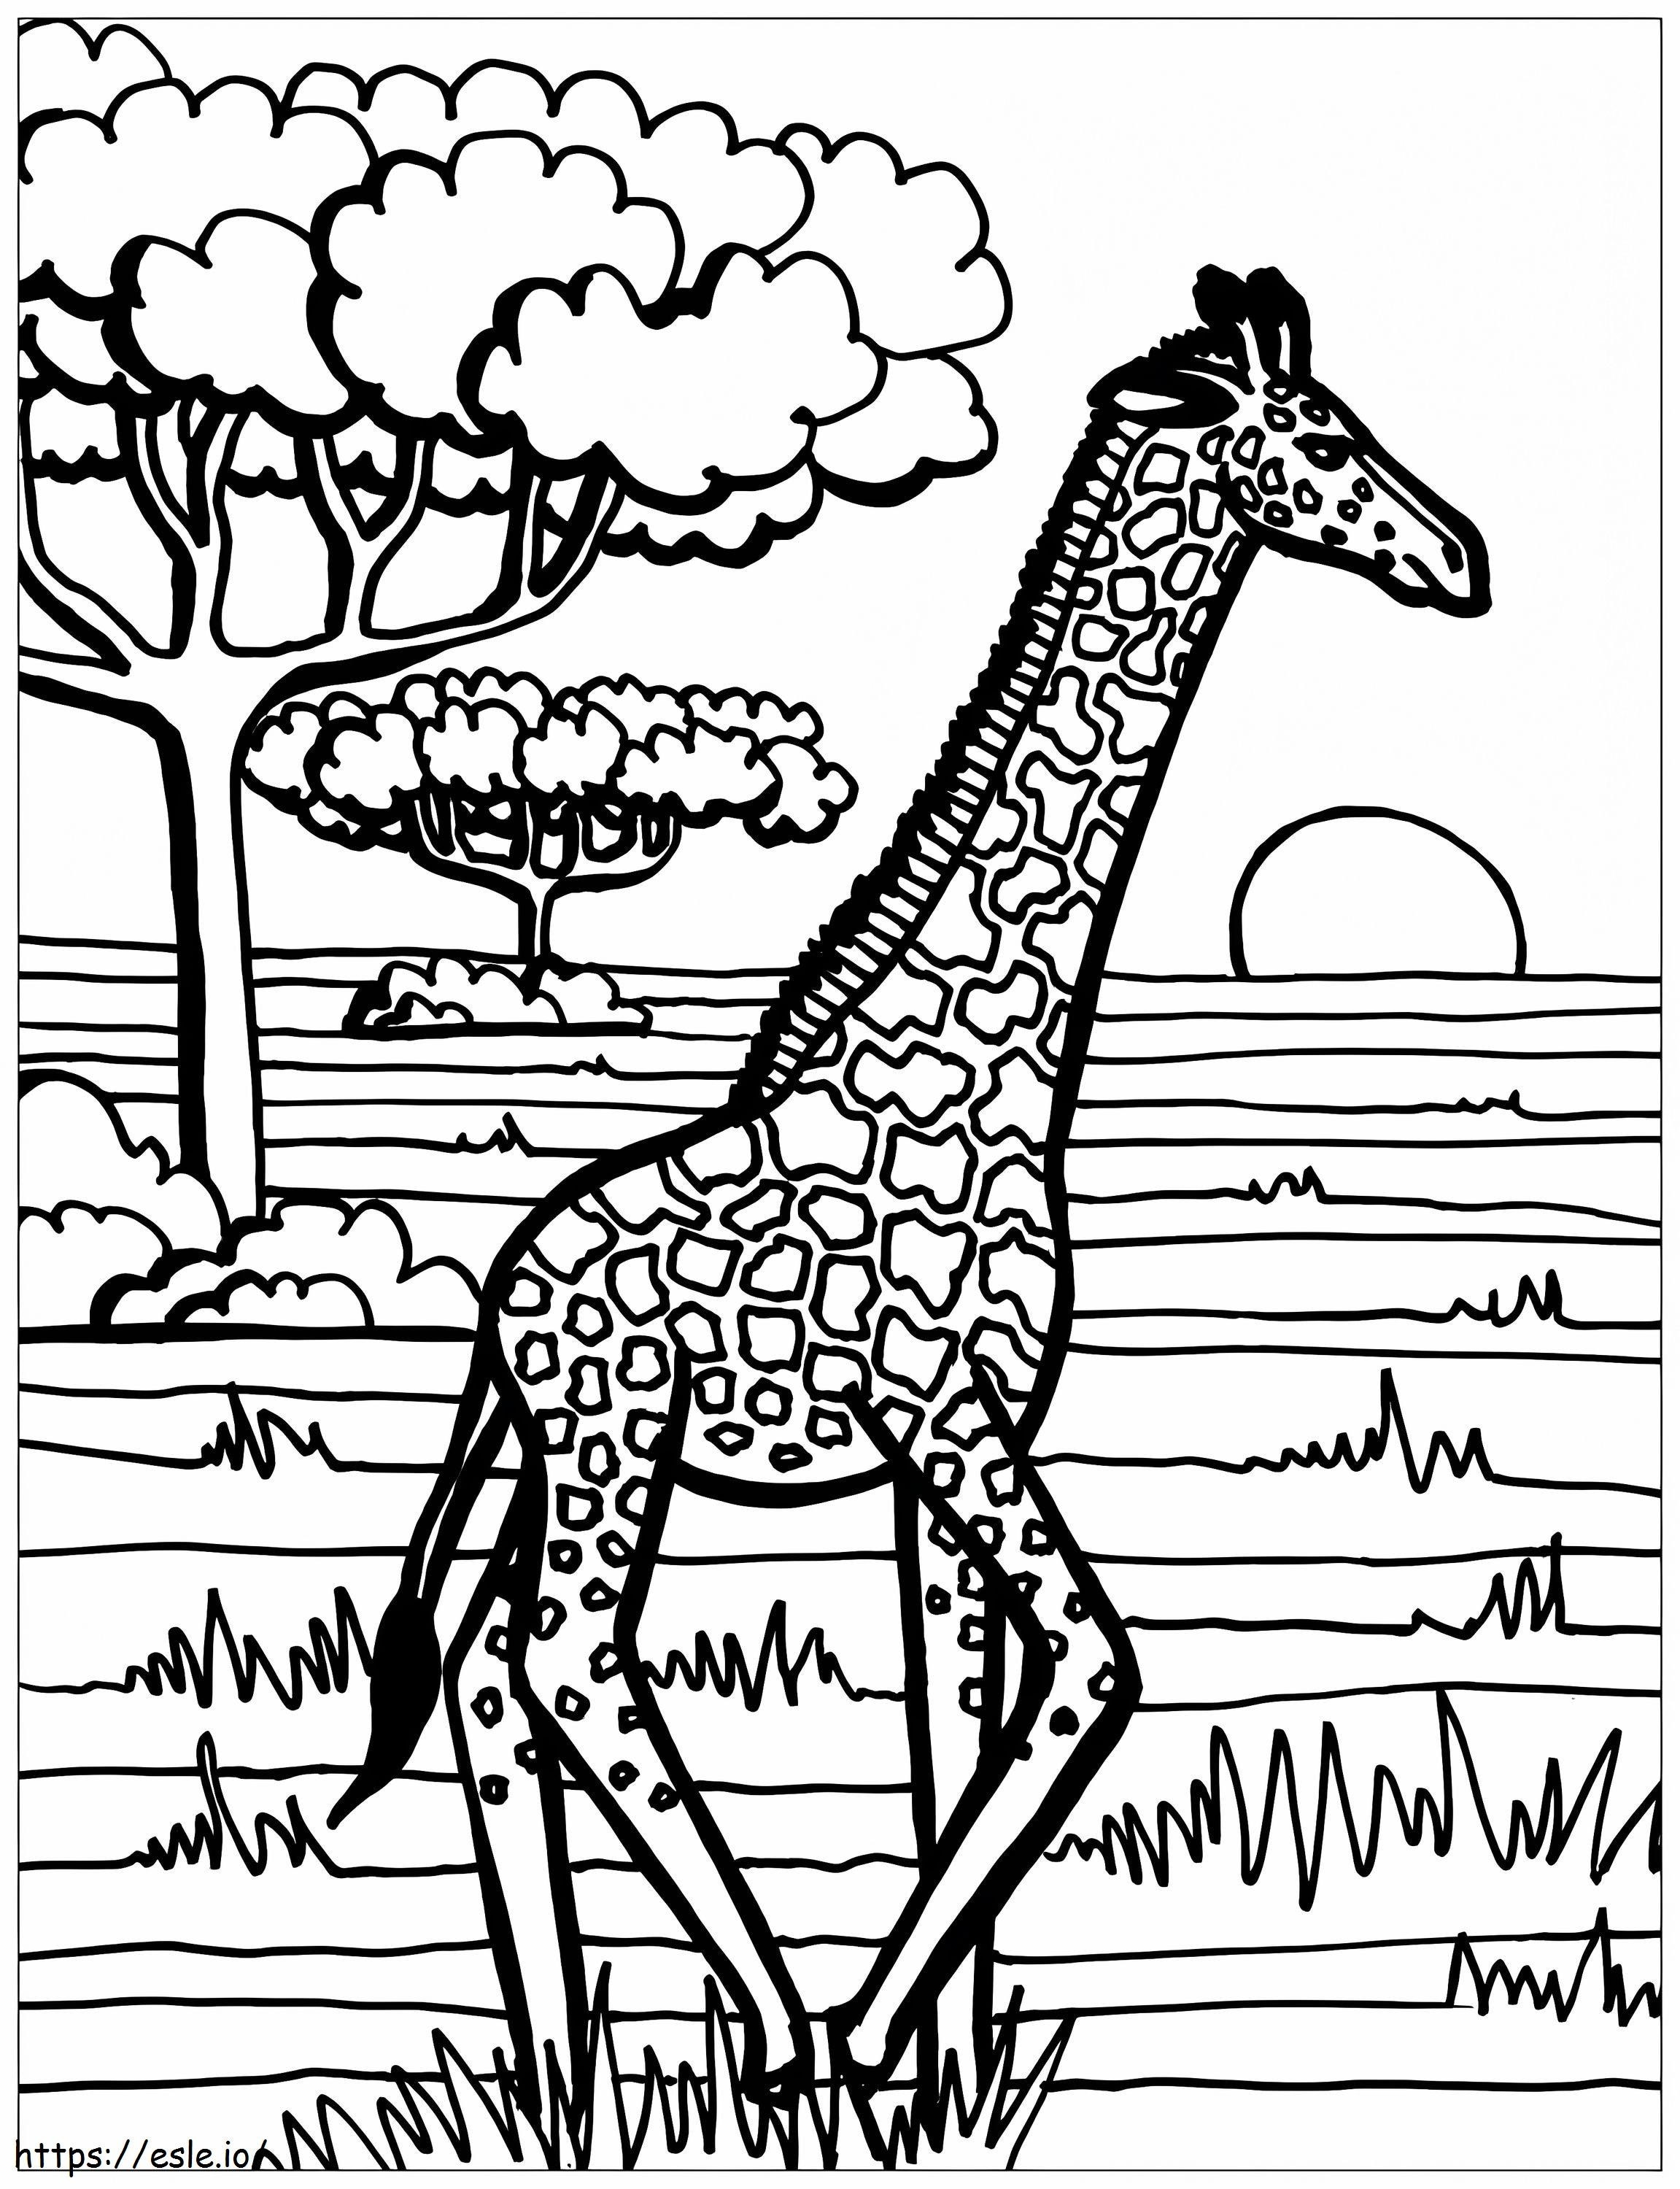 Giraffa in corsa da colorare